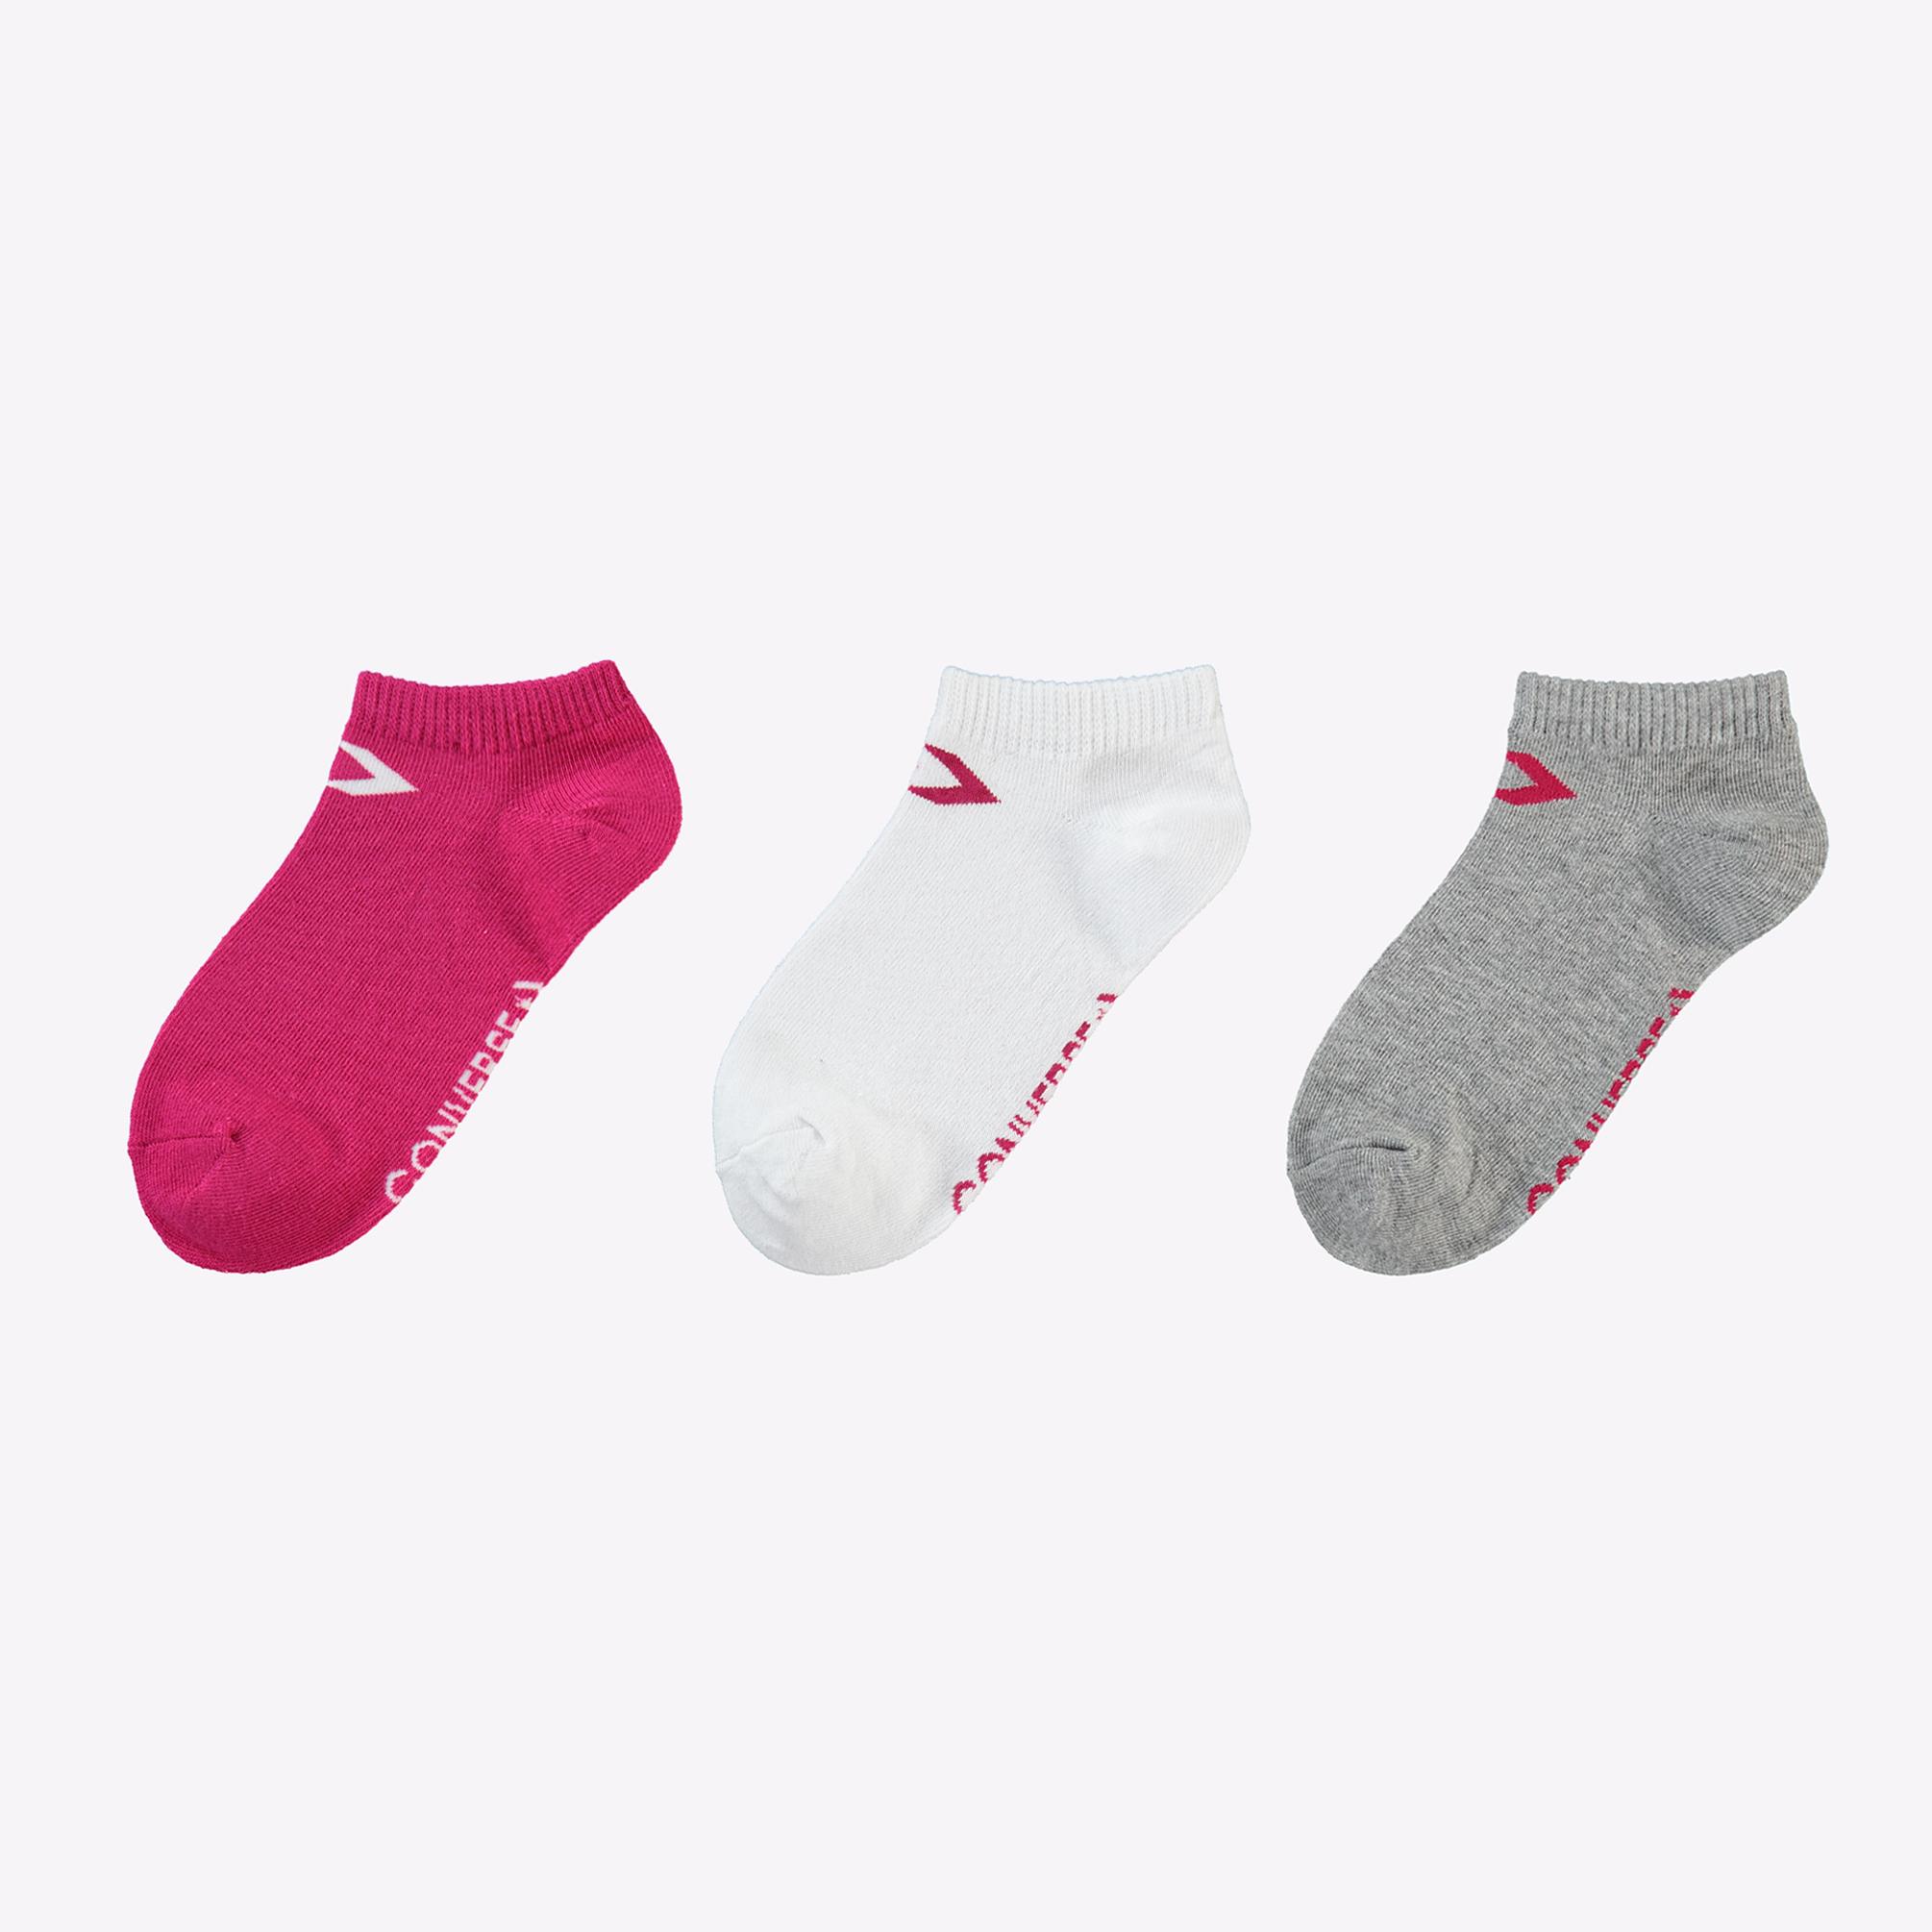  Converse Basic Flat Knit Kadın Pembe/Beyaz/Gri 3'lü Çorap